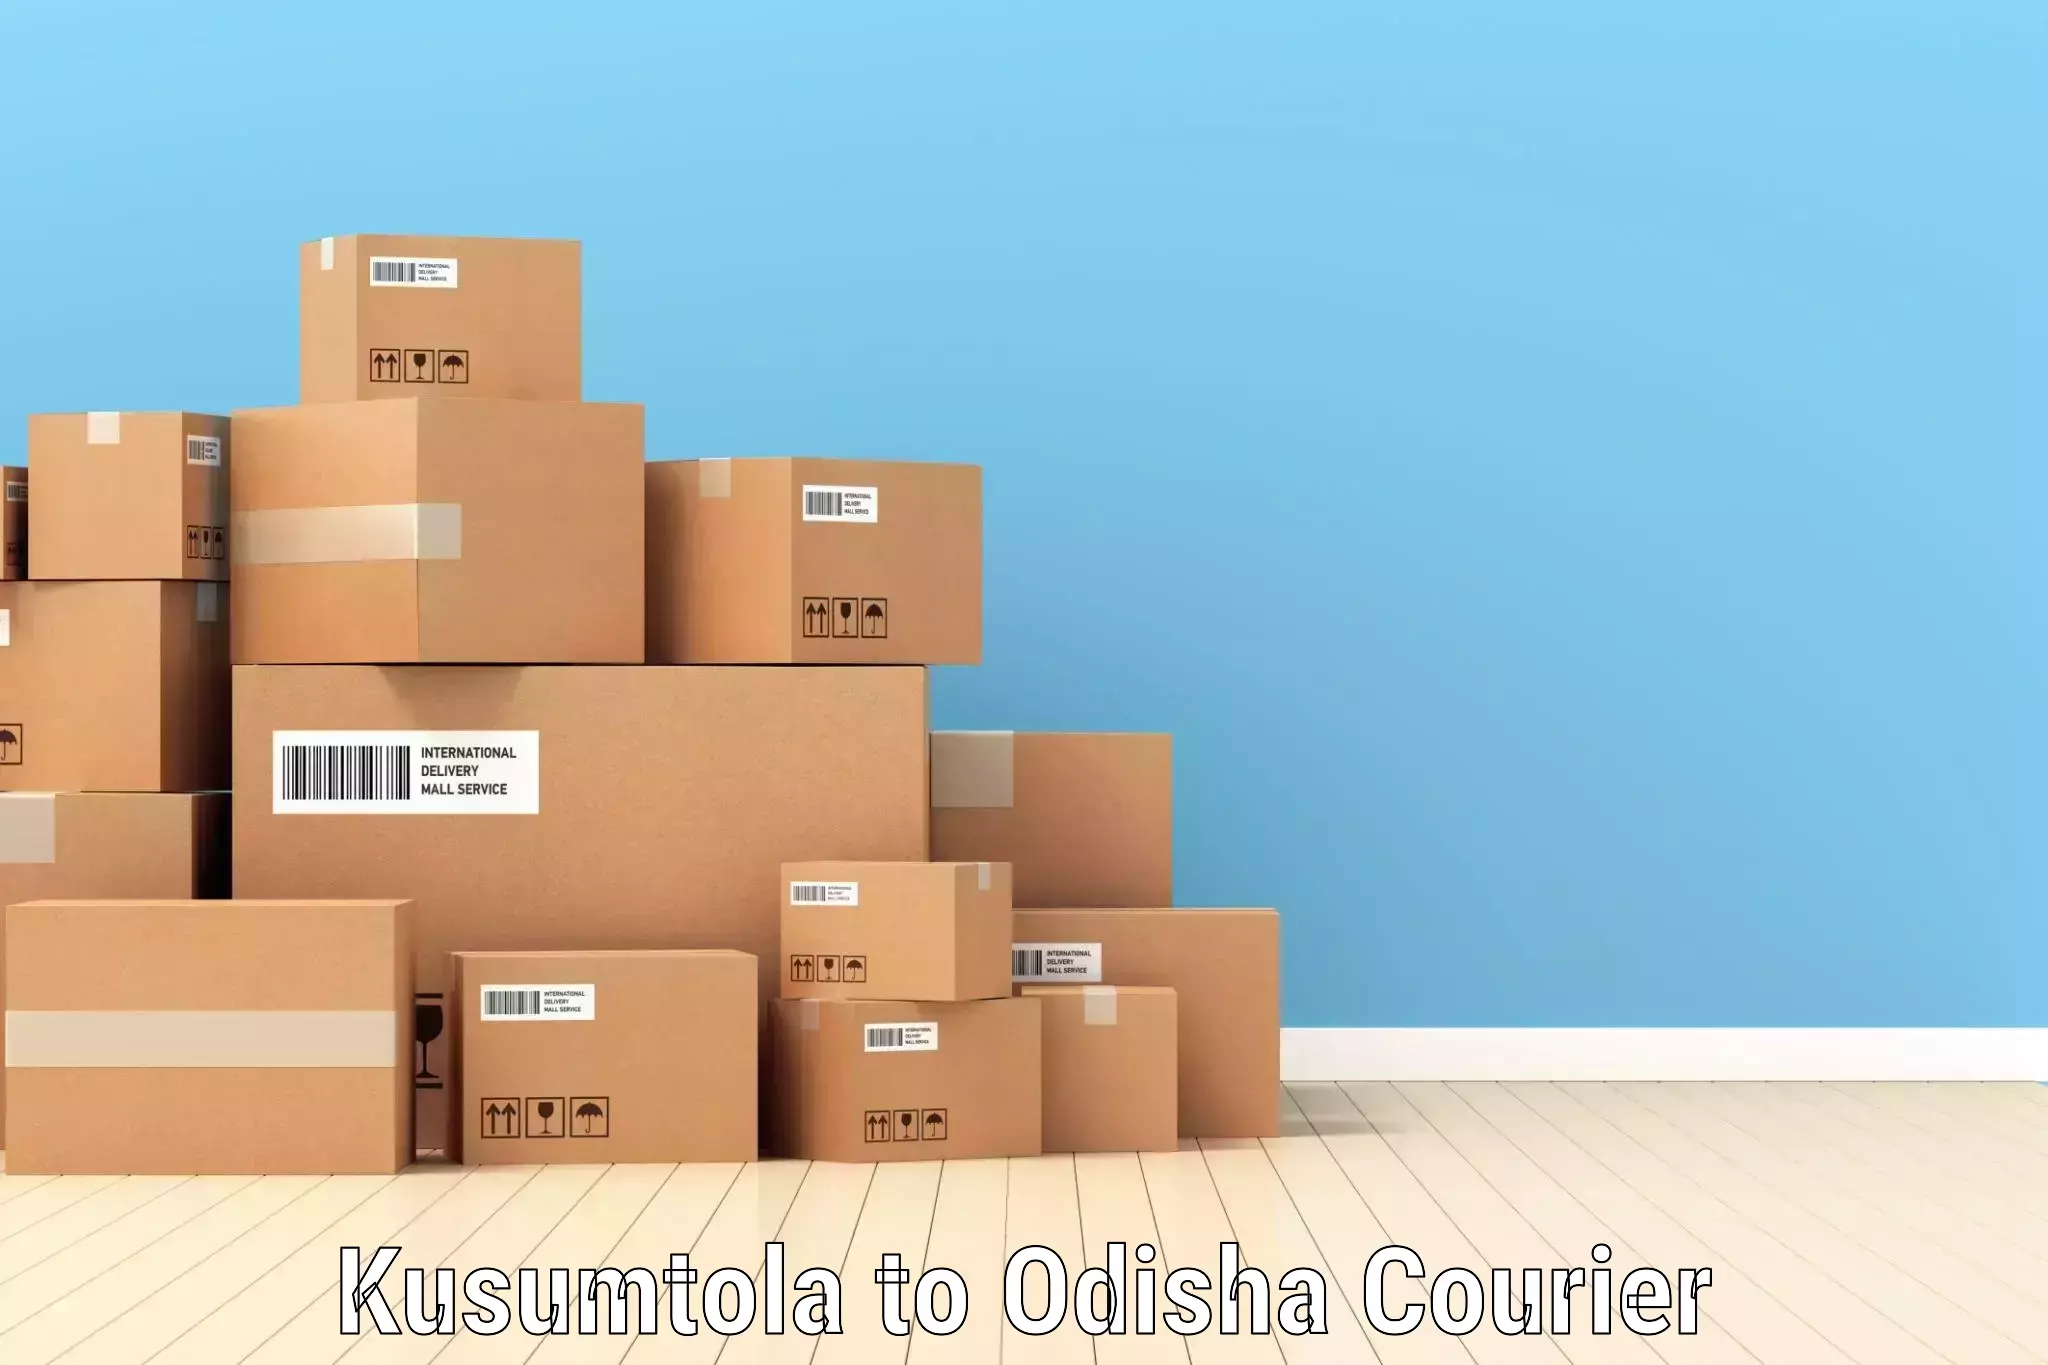 Efficient shipping operations Kusumtola to Odisha